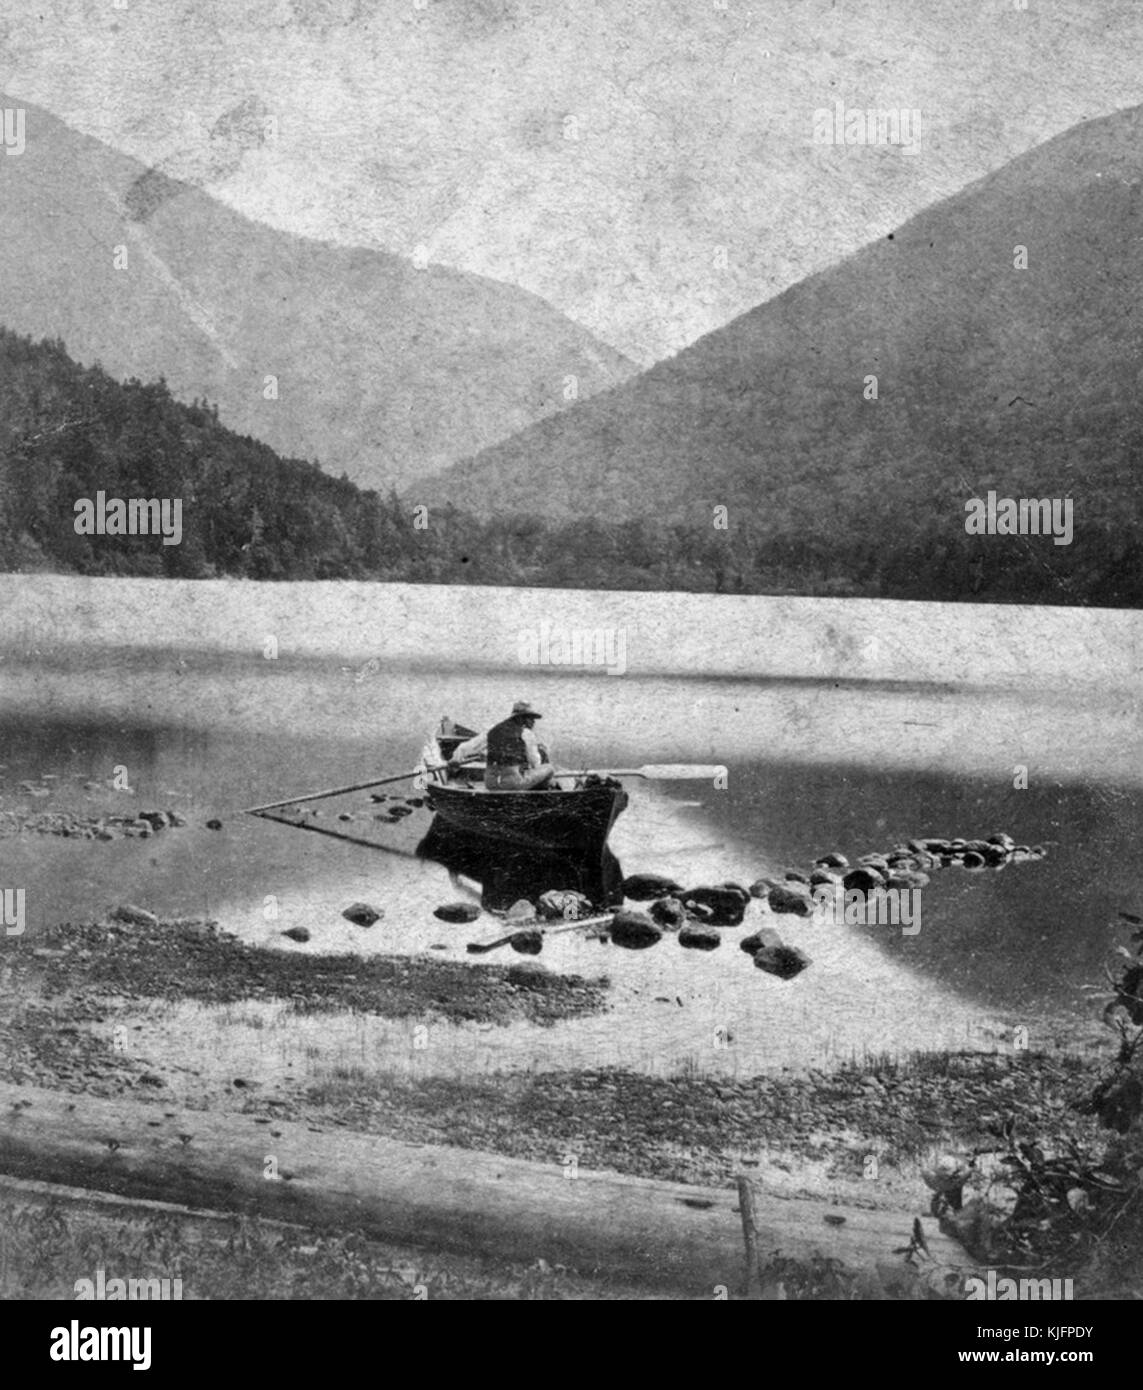 Photographie d'un homme en canoë, en eau peu profonde, montagnes en arrière-plan, intitulé 'Echo Lake et Franconia Notch, White Mountains', publié par Paul et Curtis, New Hampshire, 1865. De la bibliothèque publique de New York. Banque D'Images